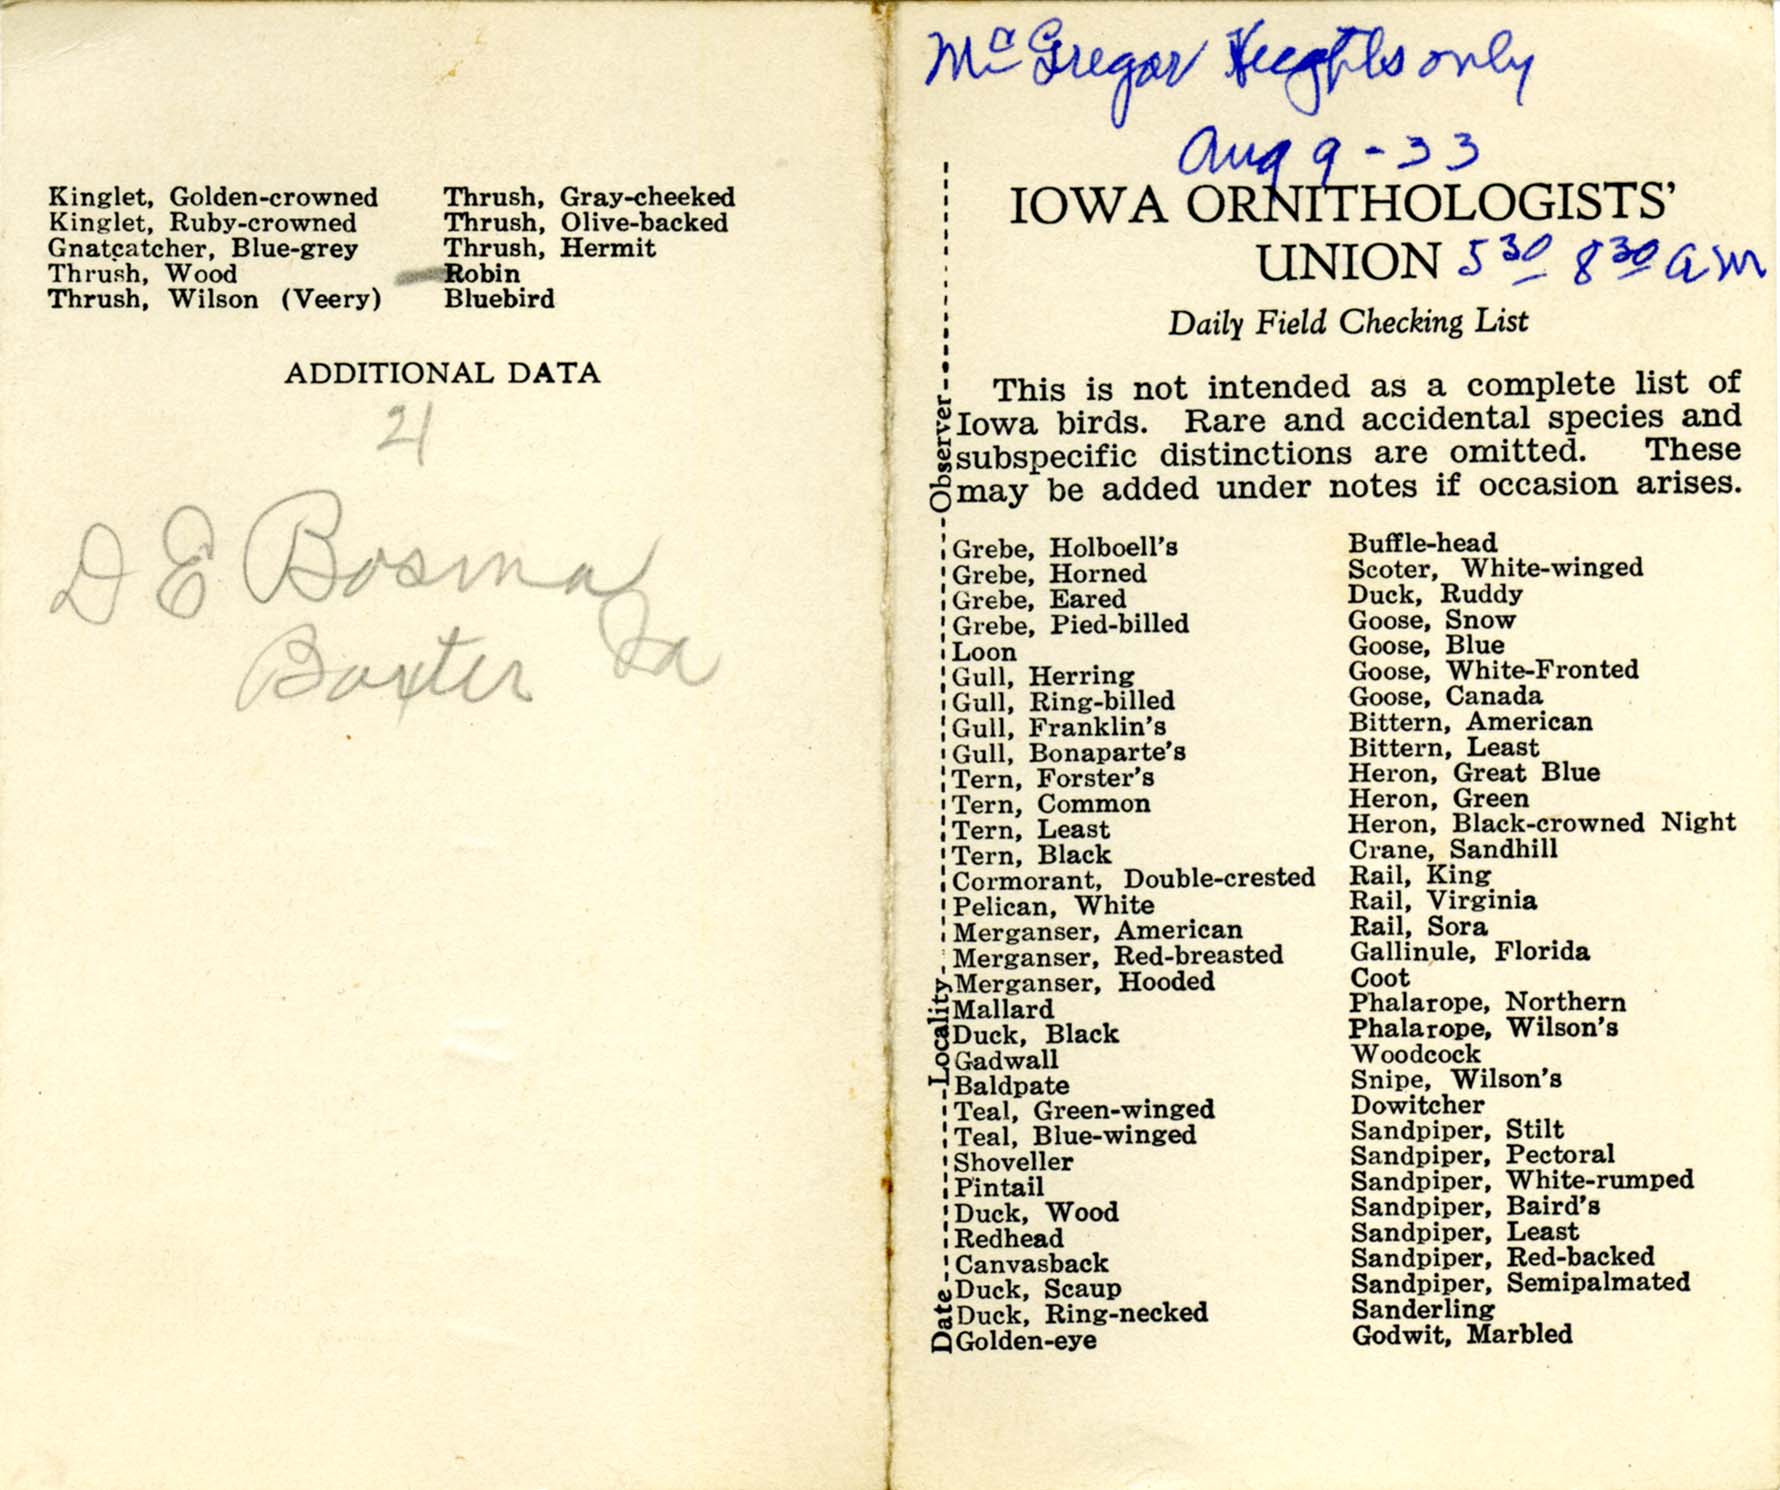 Daily field checking list, Walter Rosene, McGregor August 9, 1933